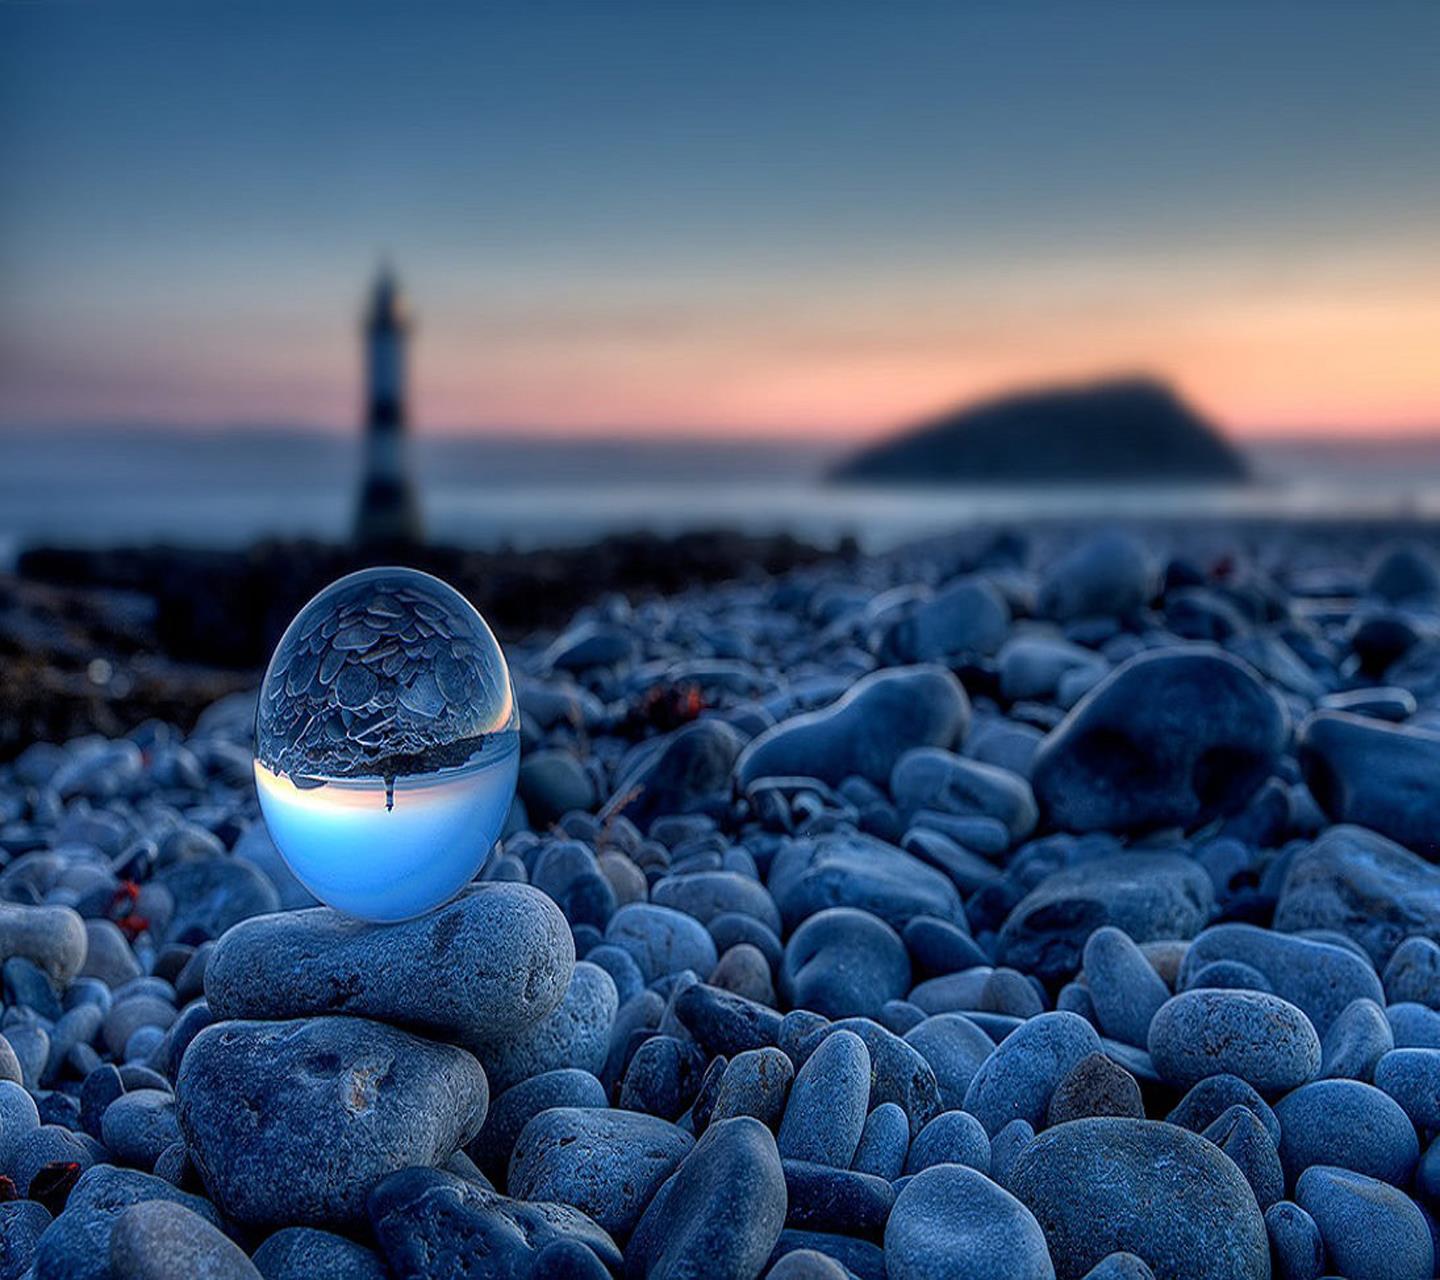 Un cristallo su una spiaggia - Sfondi per Android, i più belli da scaricare gratis